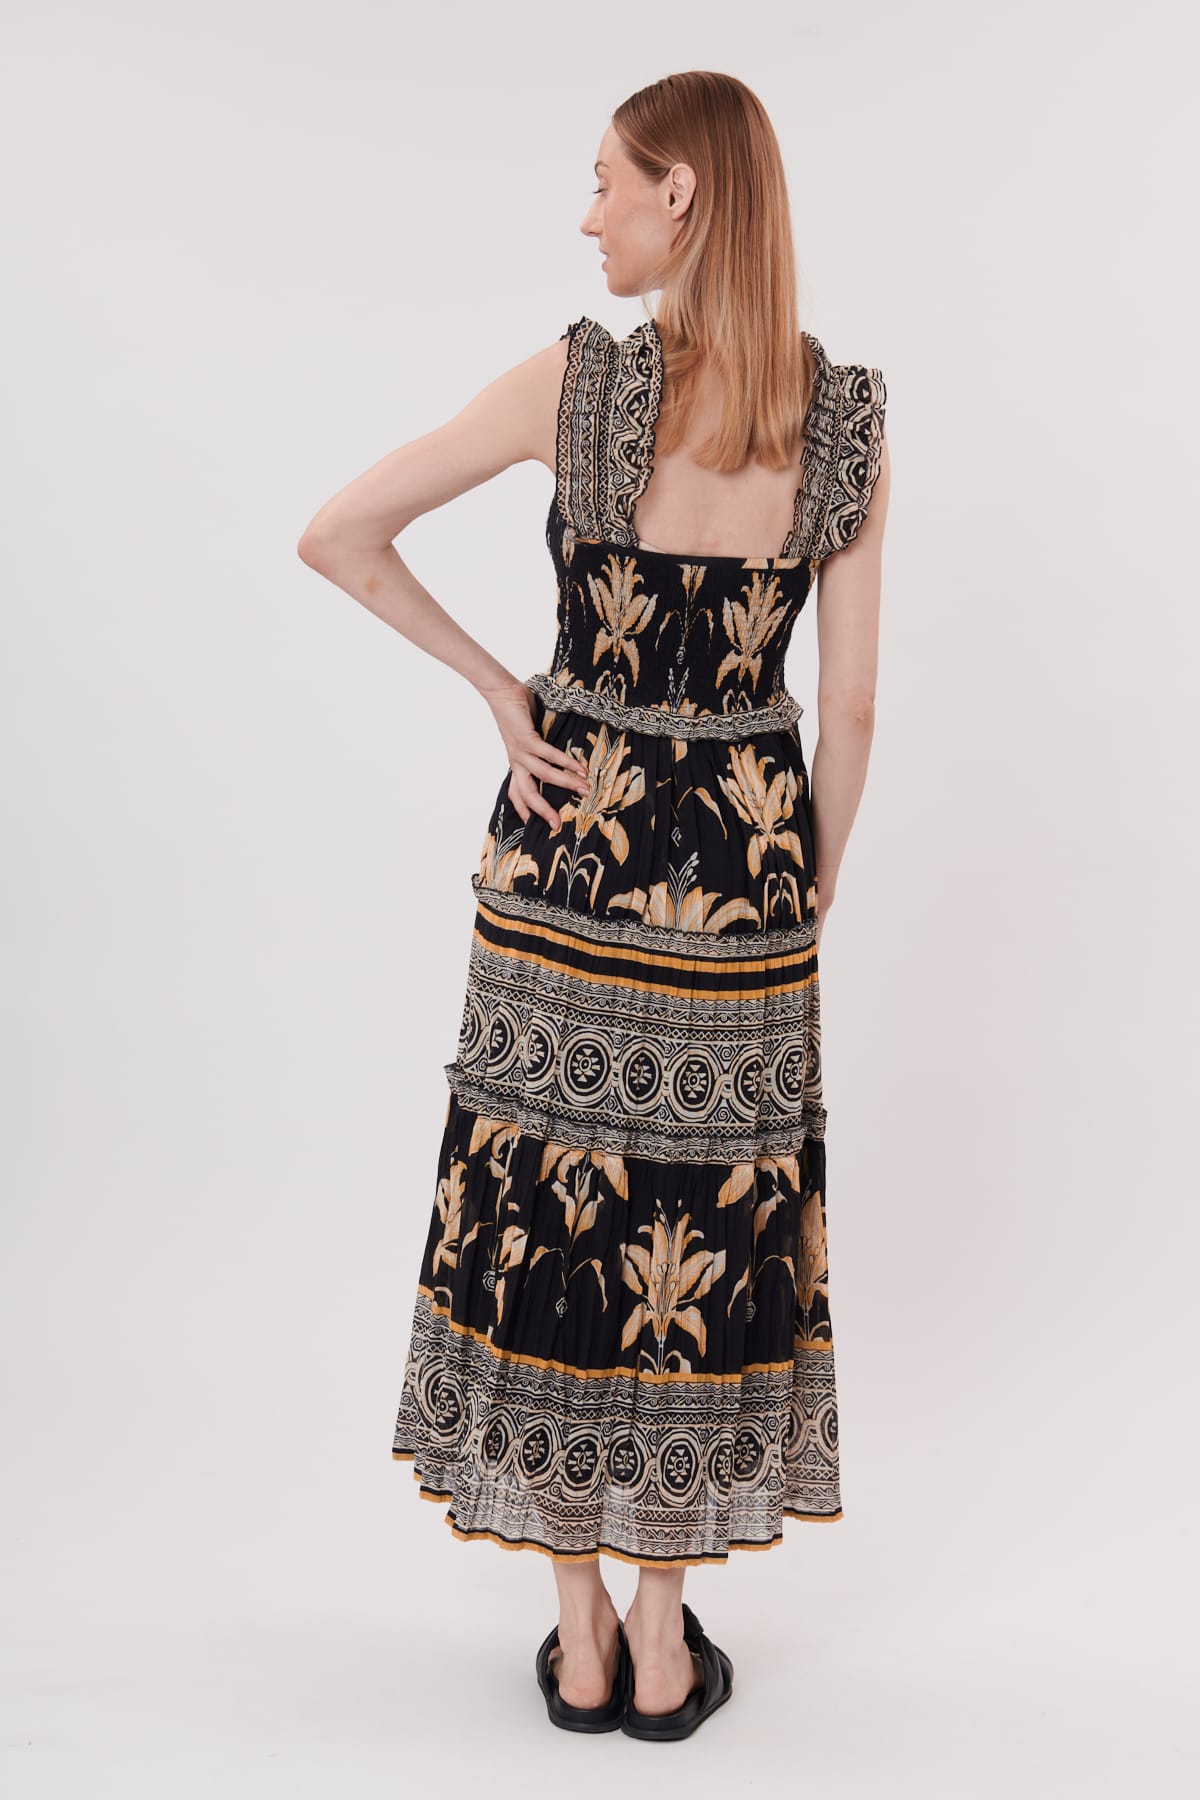 Derhy Tendresse print cotton tiered dress